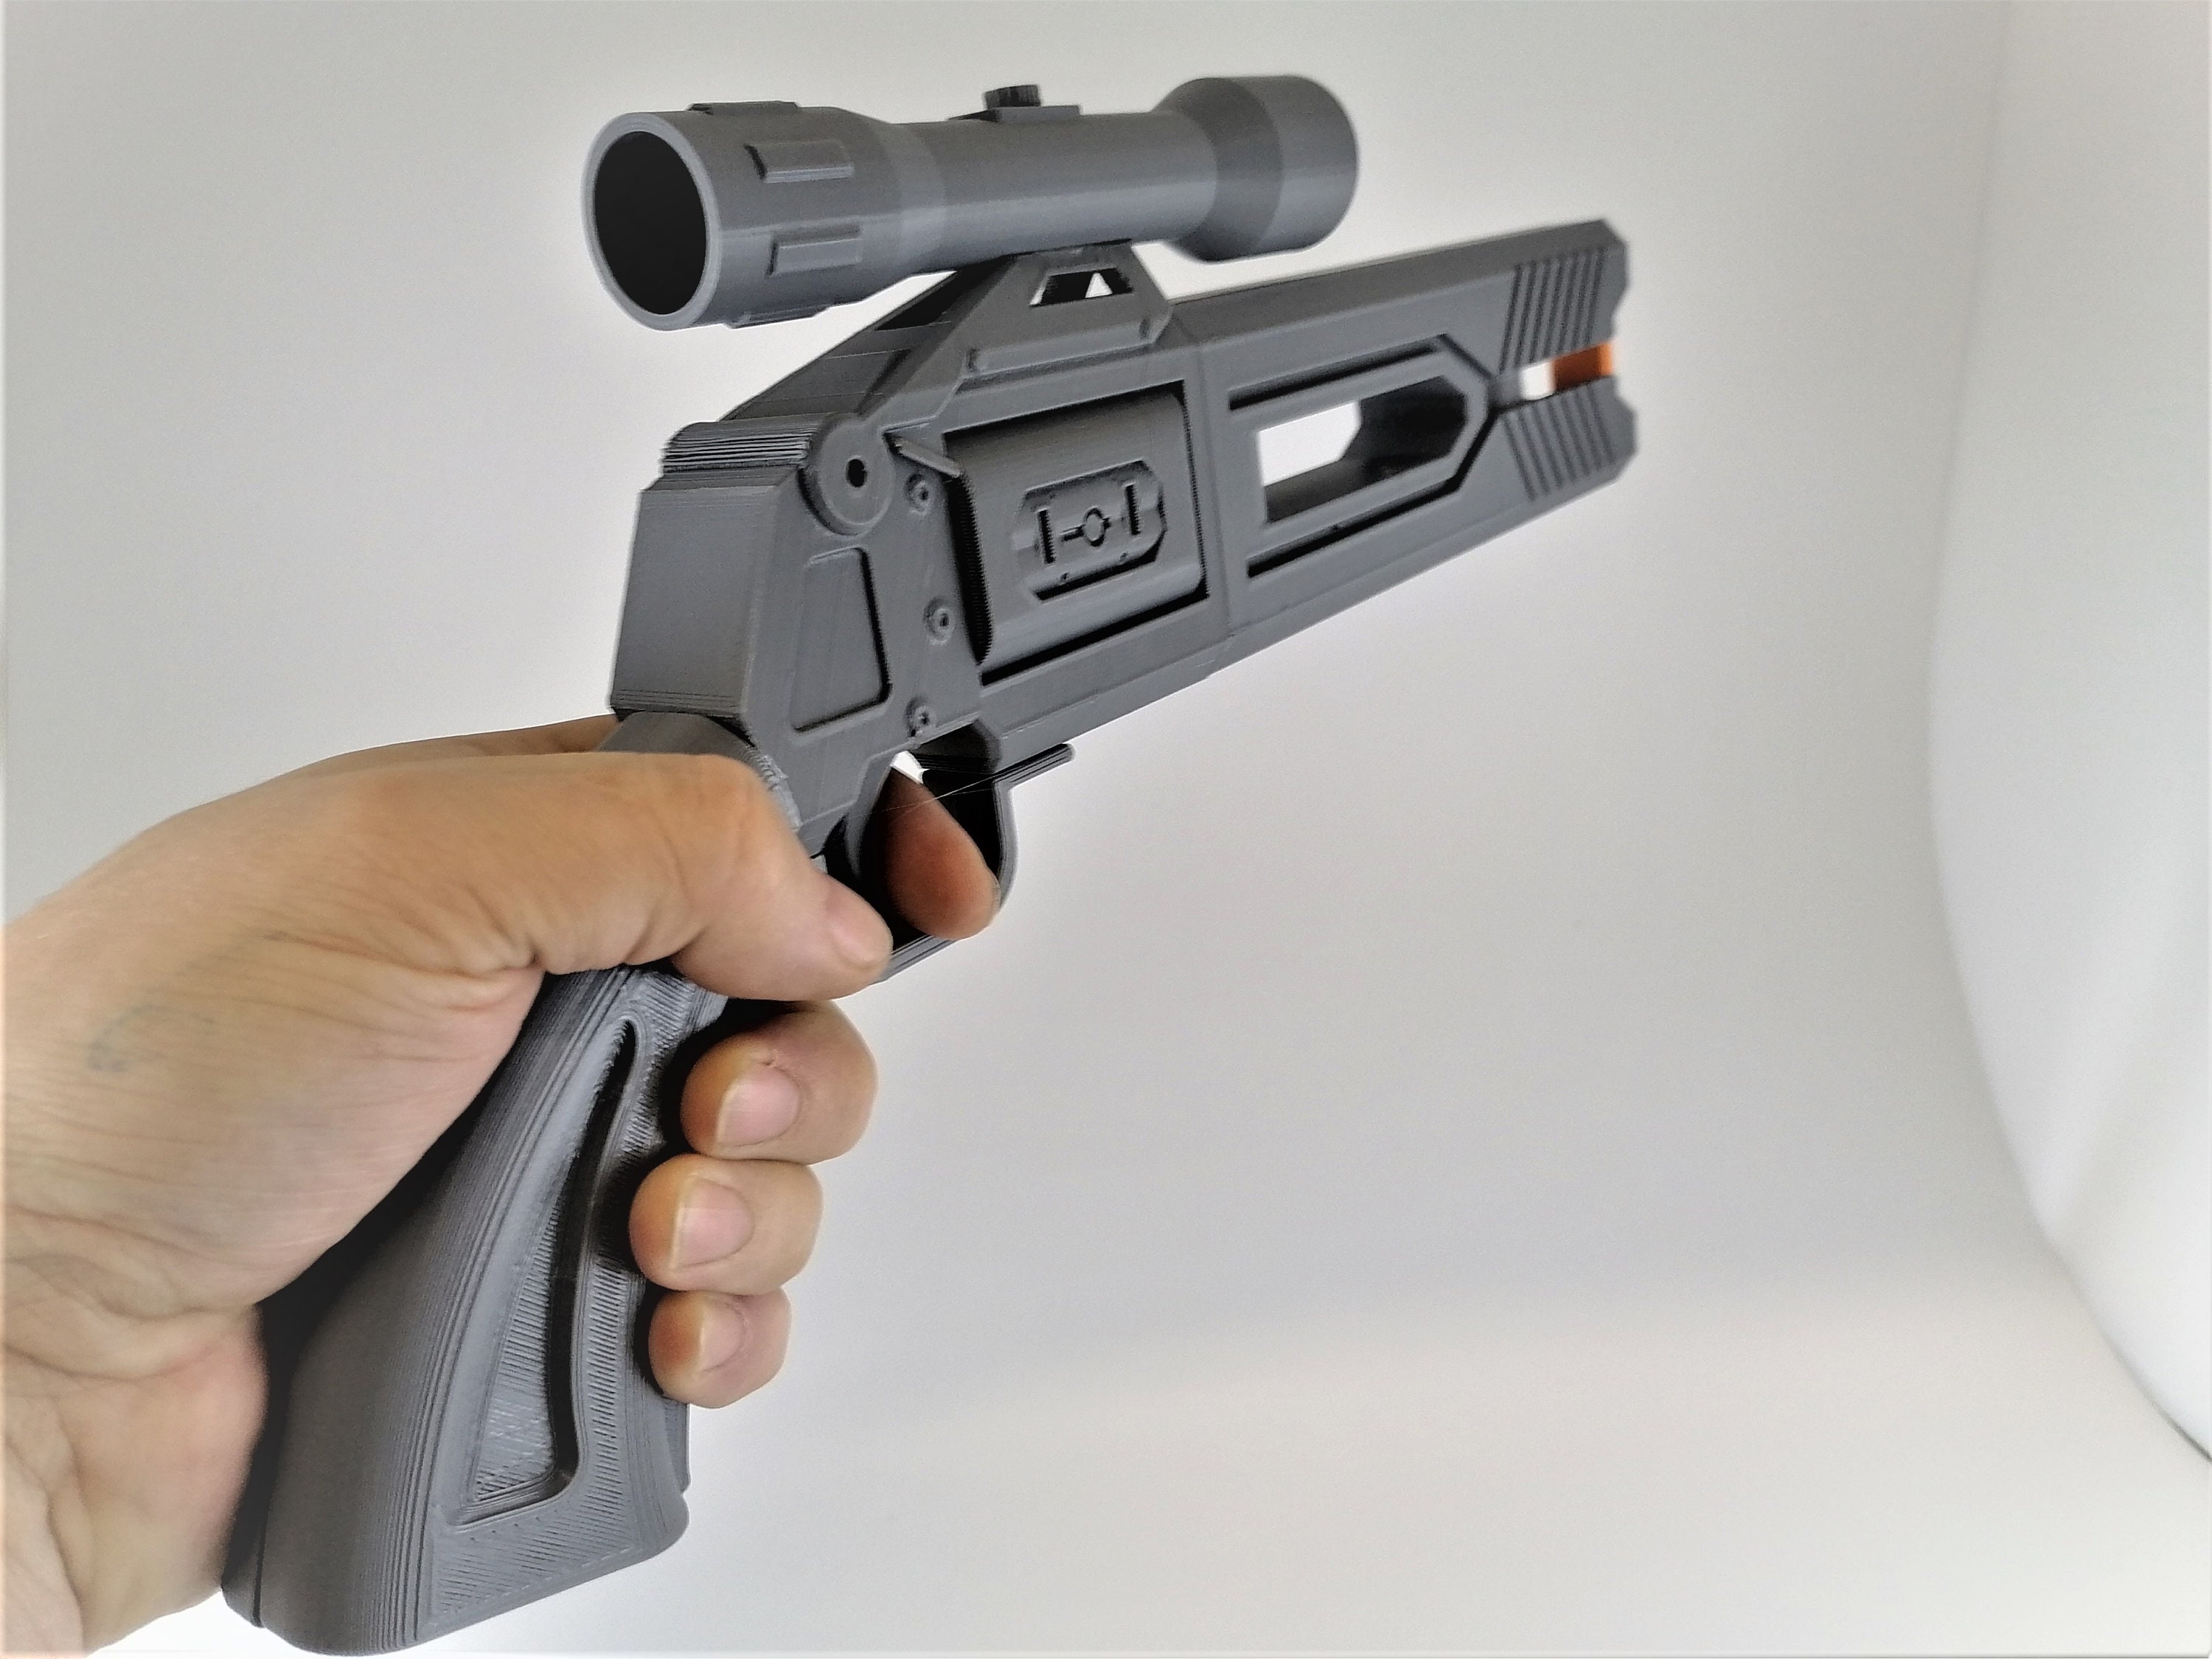 Achetez Fascinating pistolet jouet spinner à des prix avantageux